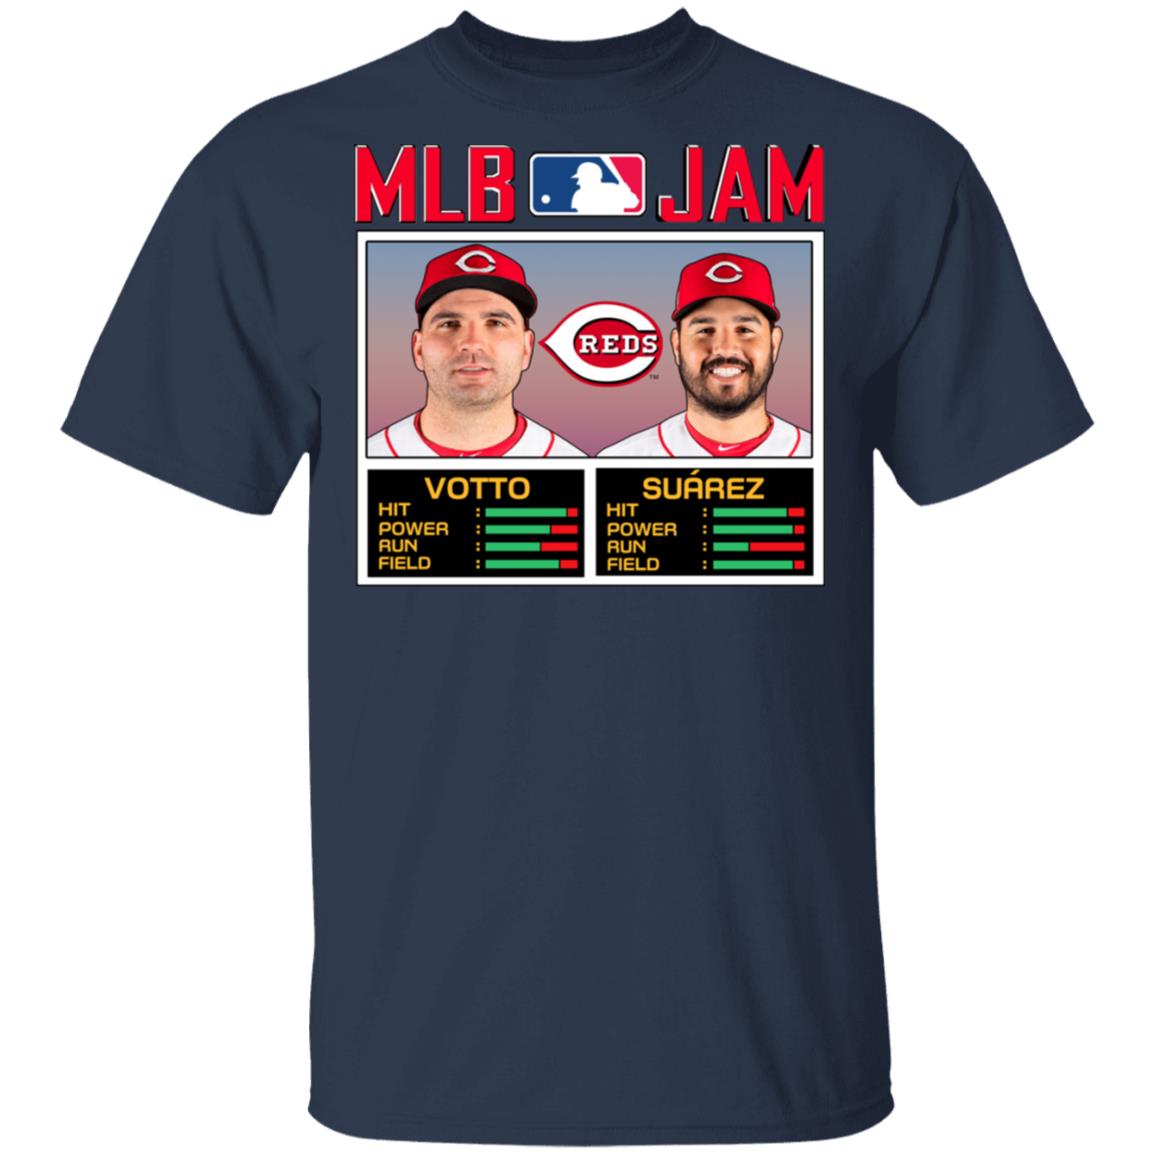 MLB Jam Reds Votto And Suarez T-Shirts